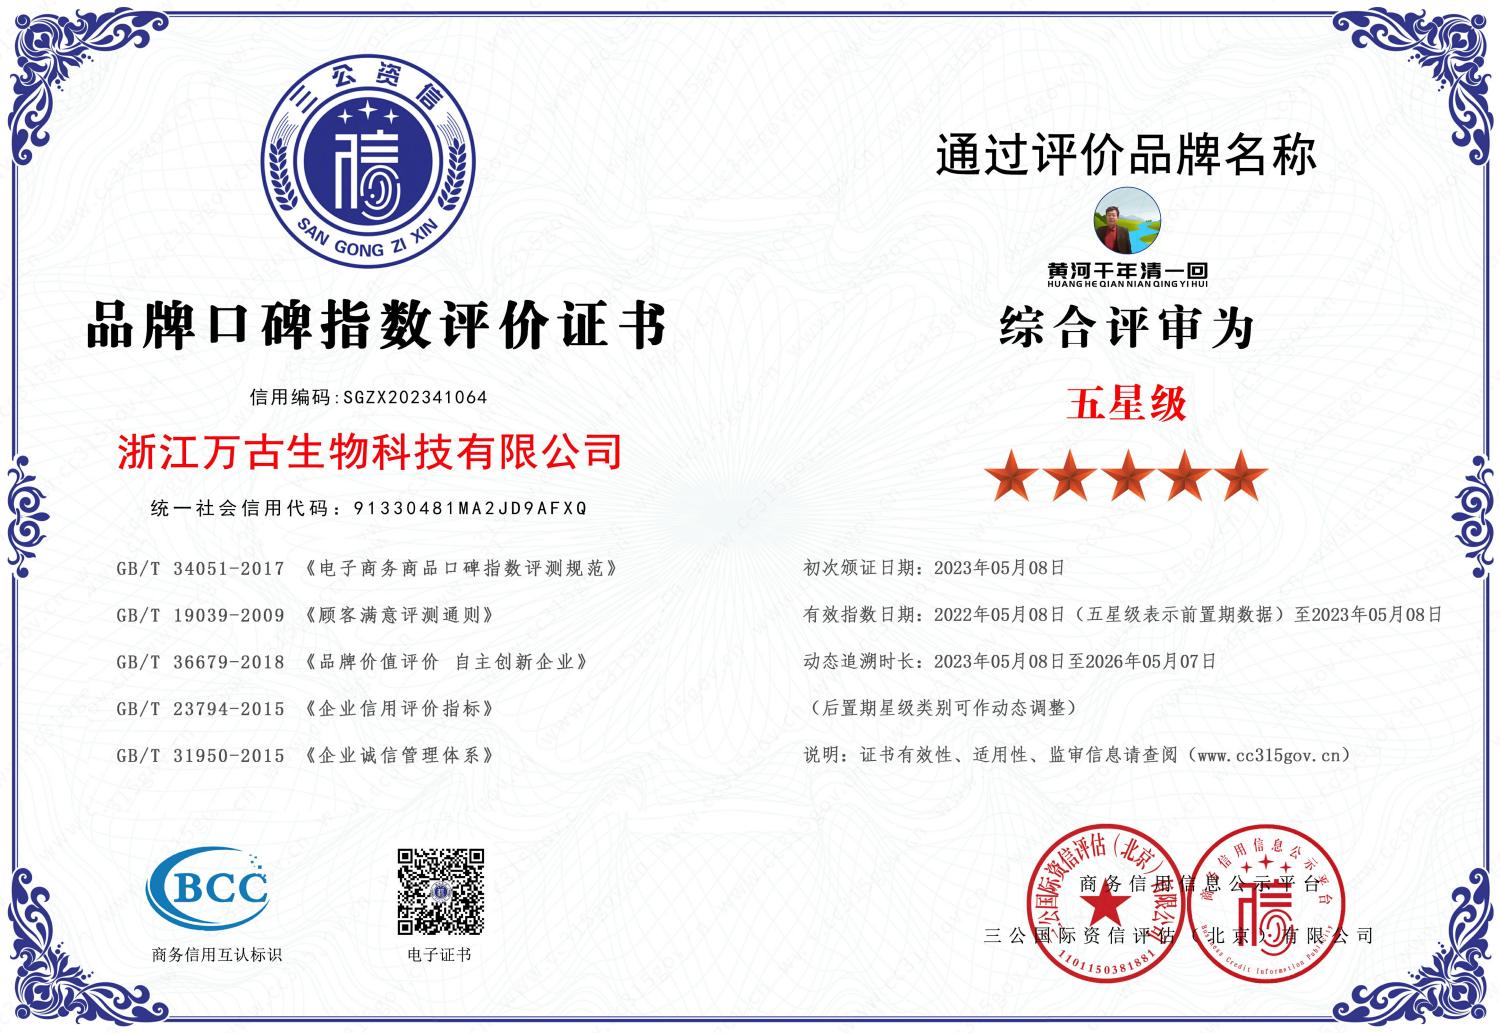 黄河千年清一回向5.28北京第十届全世界大健康产业发展大会献礼